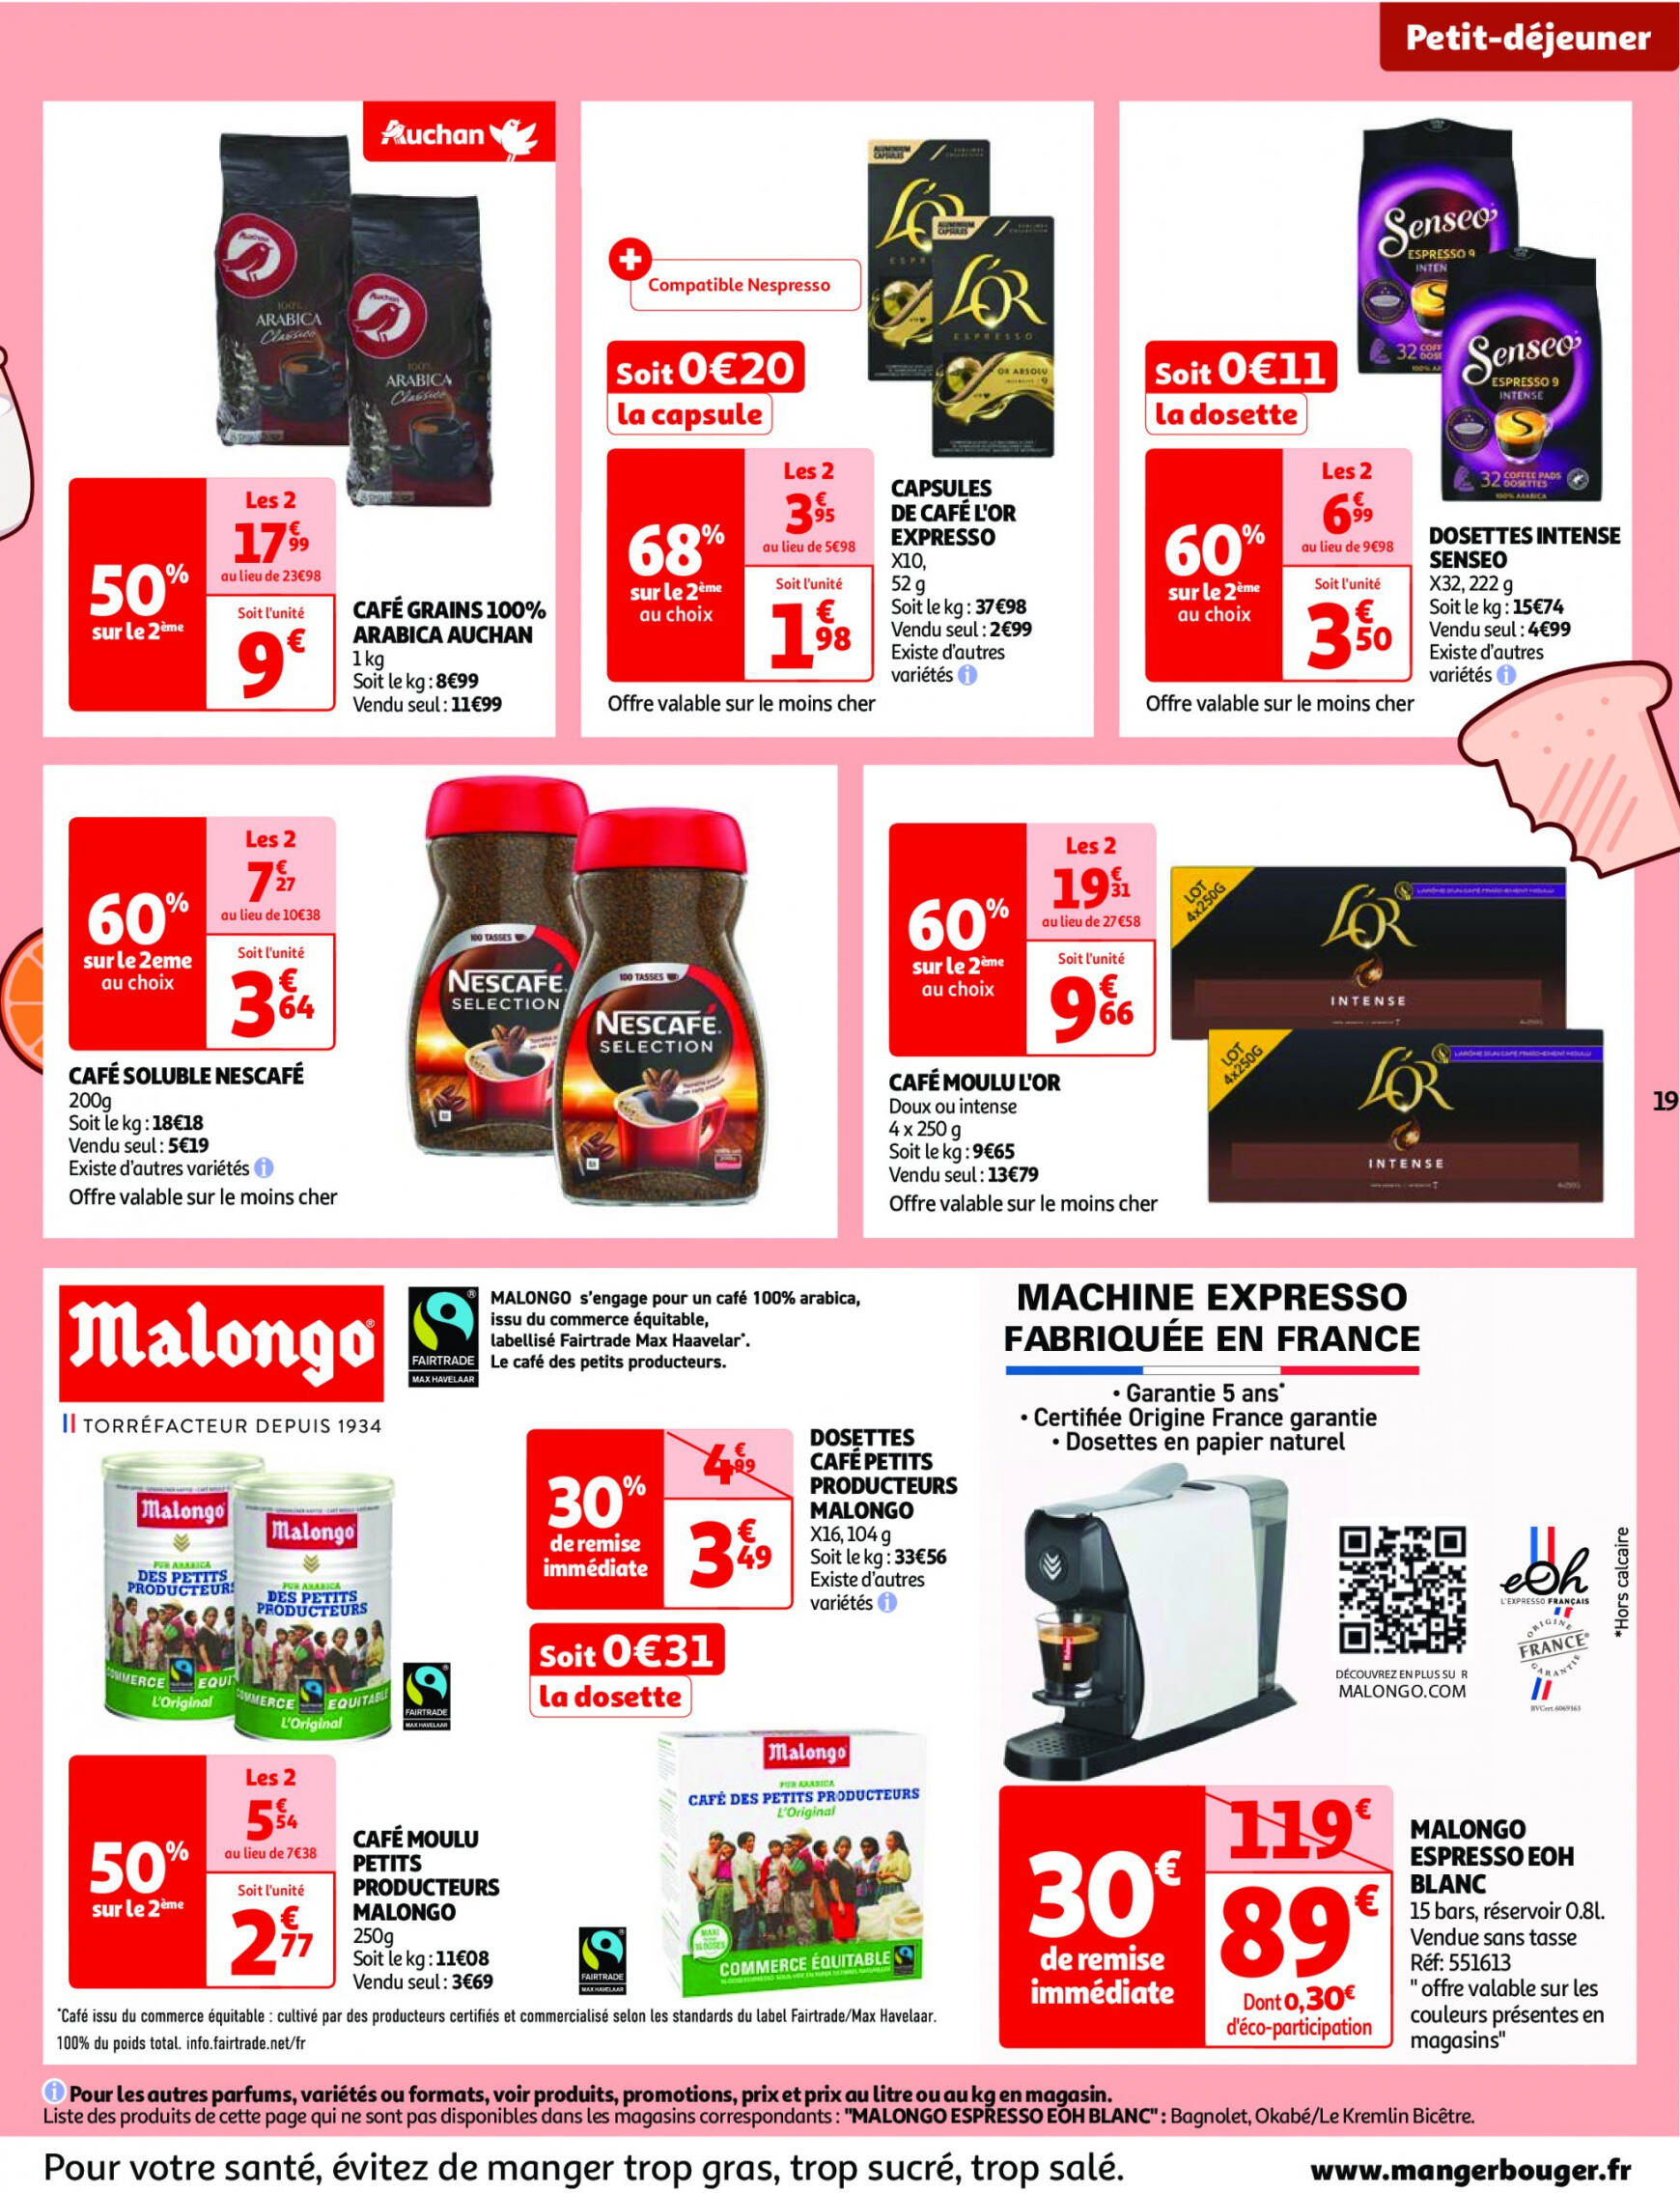 auchan - Auchan - Nos surgelés ont tout bon folder huidig 14.05. - 21.05. - page: 19